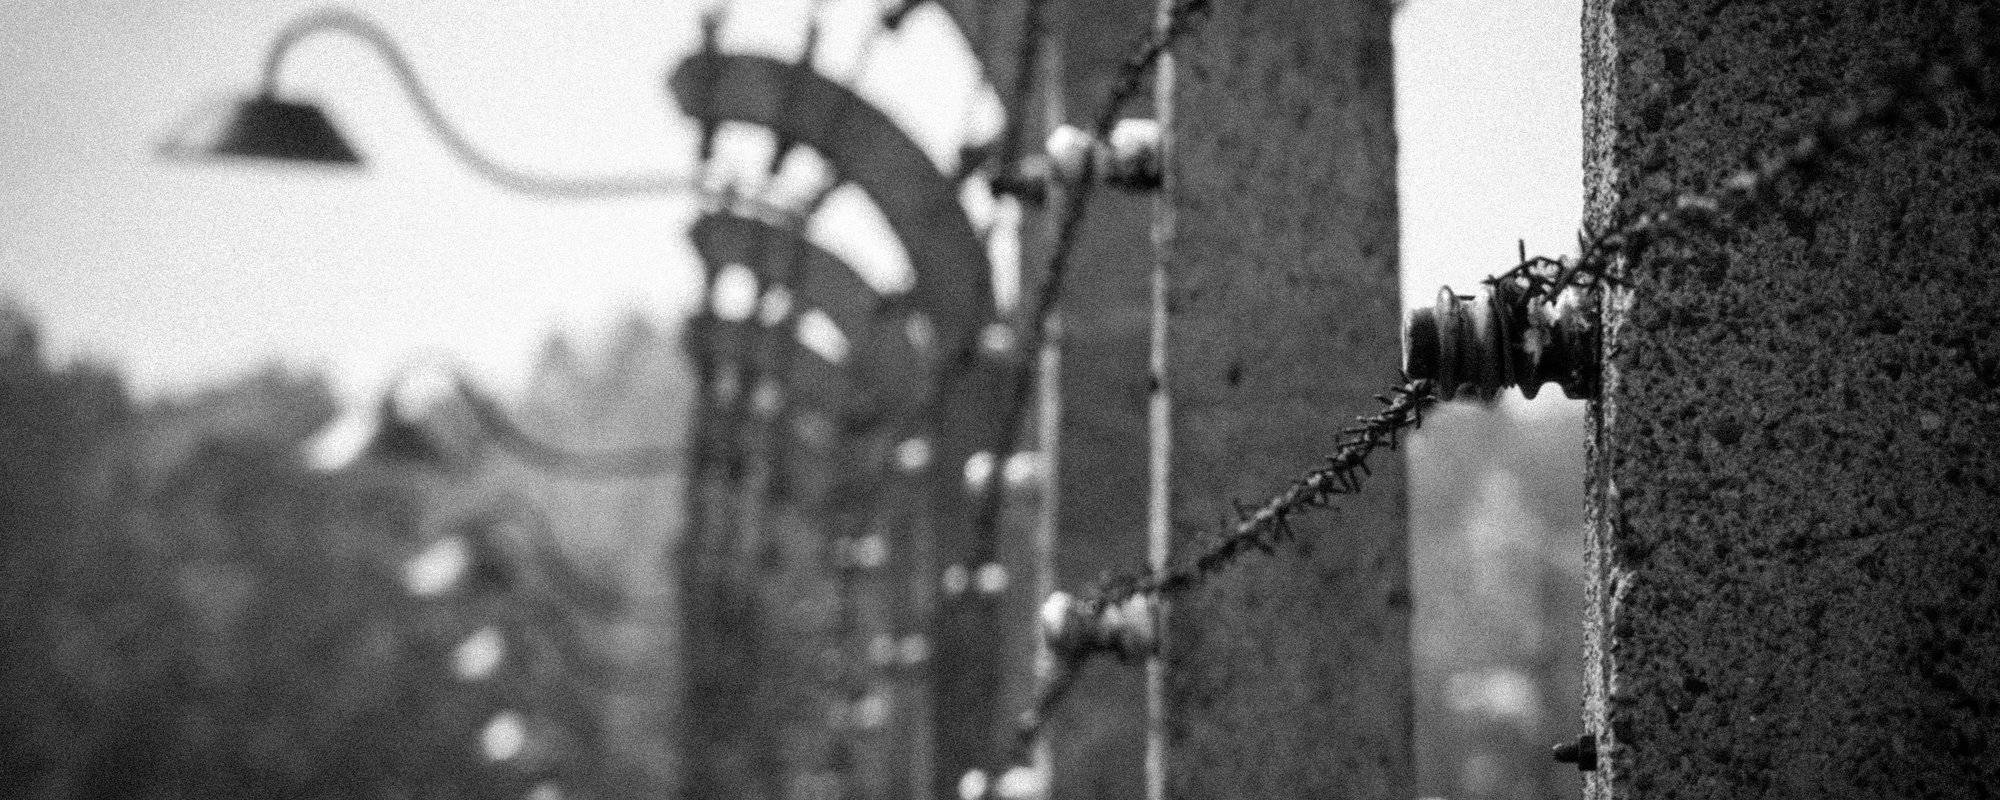 AUSCHWITZ Concentration Camp - The saddest place I've ever visited [EN/DE]